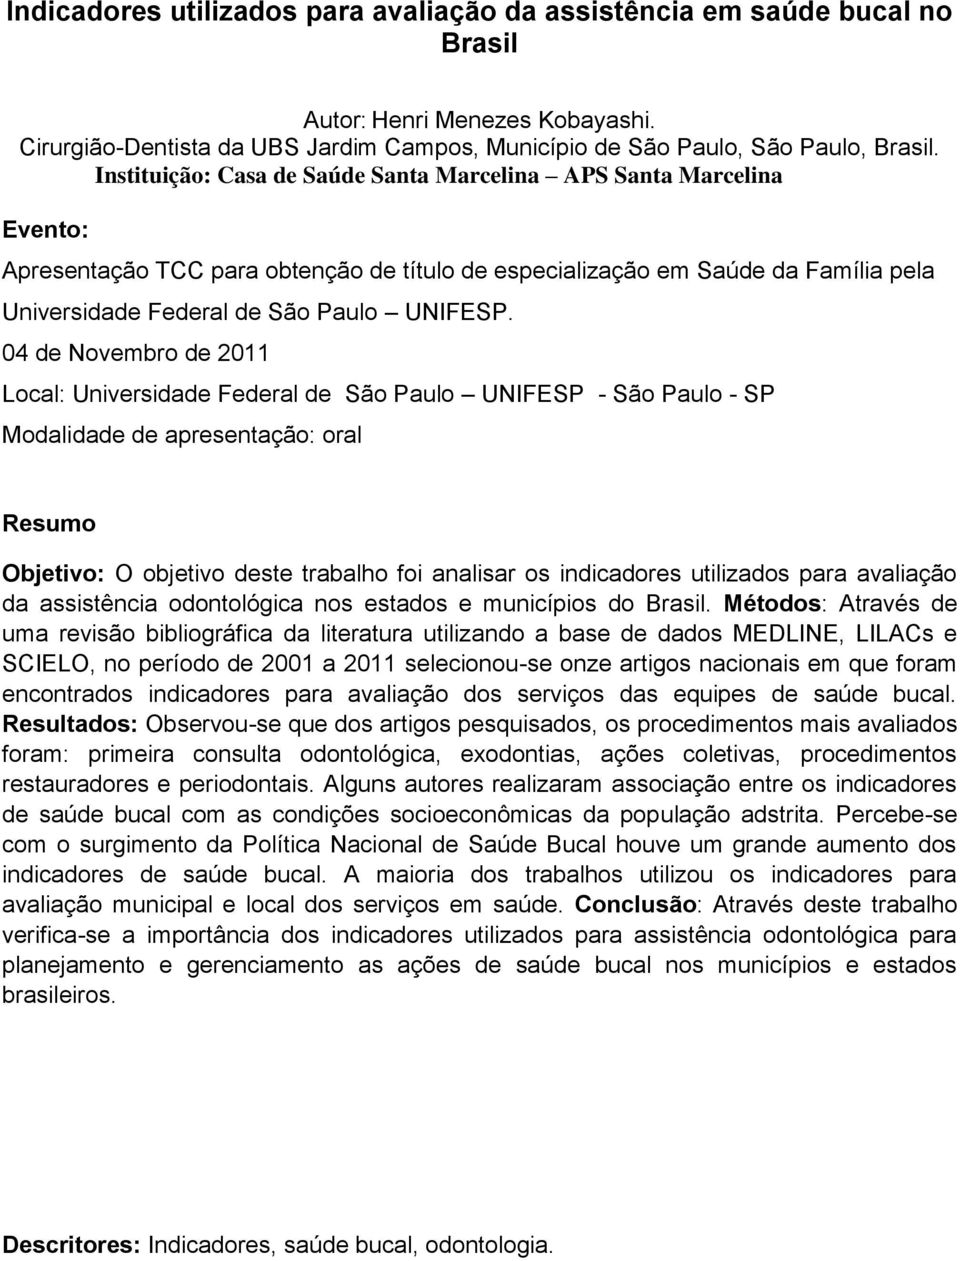 04 de Novembro de 2011 Local: Universidade Federal de São Paulo UNIFESP - São Paulo - SP Modalidade de apresentação: oral Resumo Objetivo: O objetivo deste trabalho foi analisar os indicadores